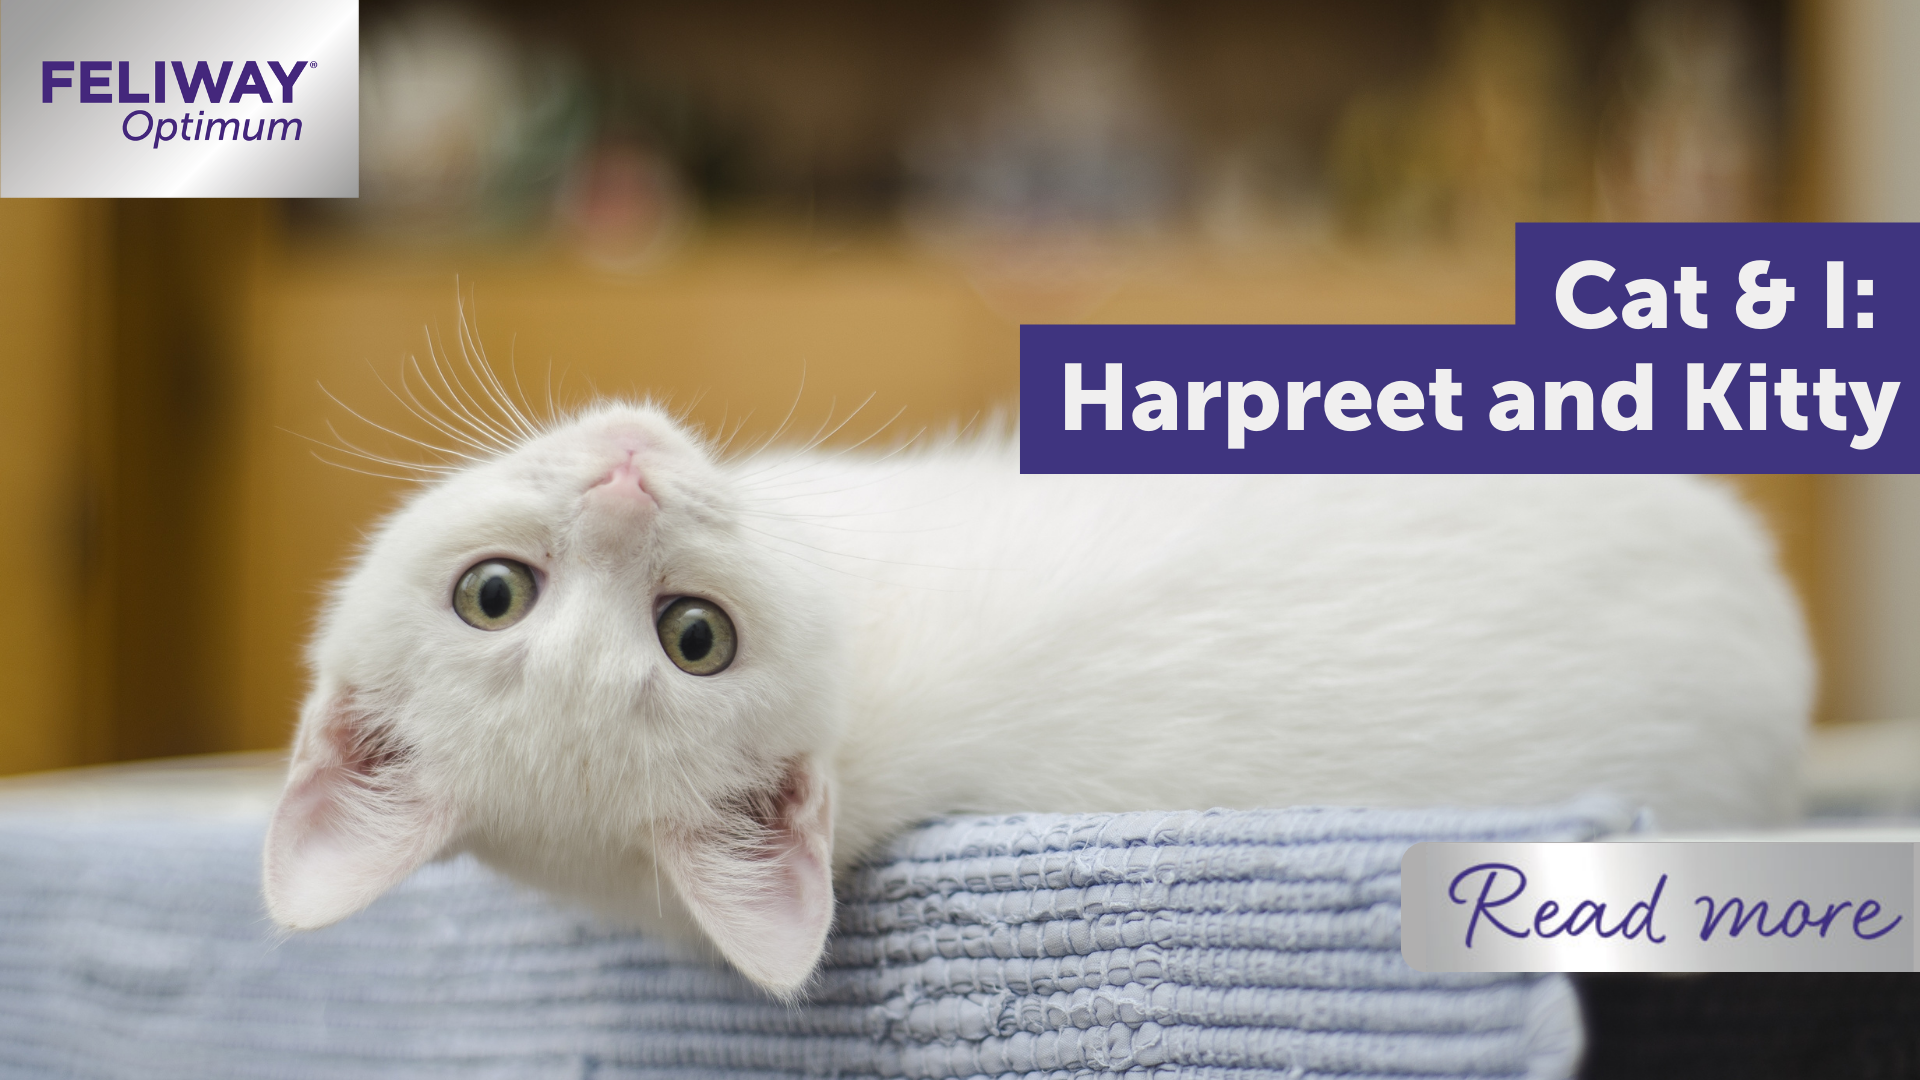 Cat & I: Harpreet and Kitty